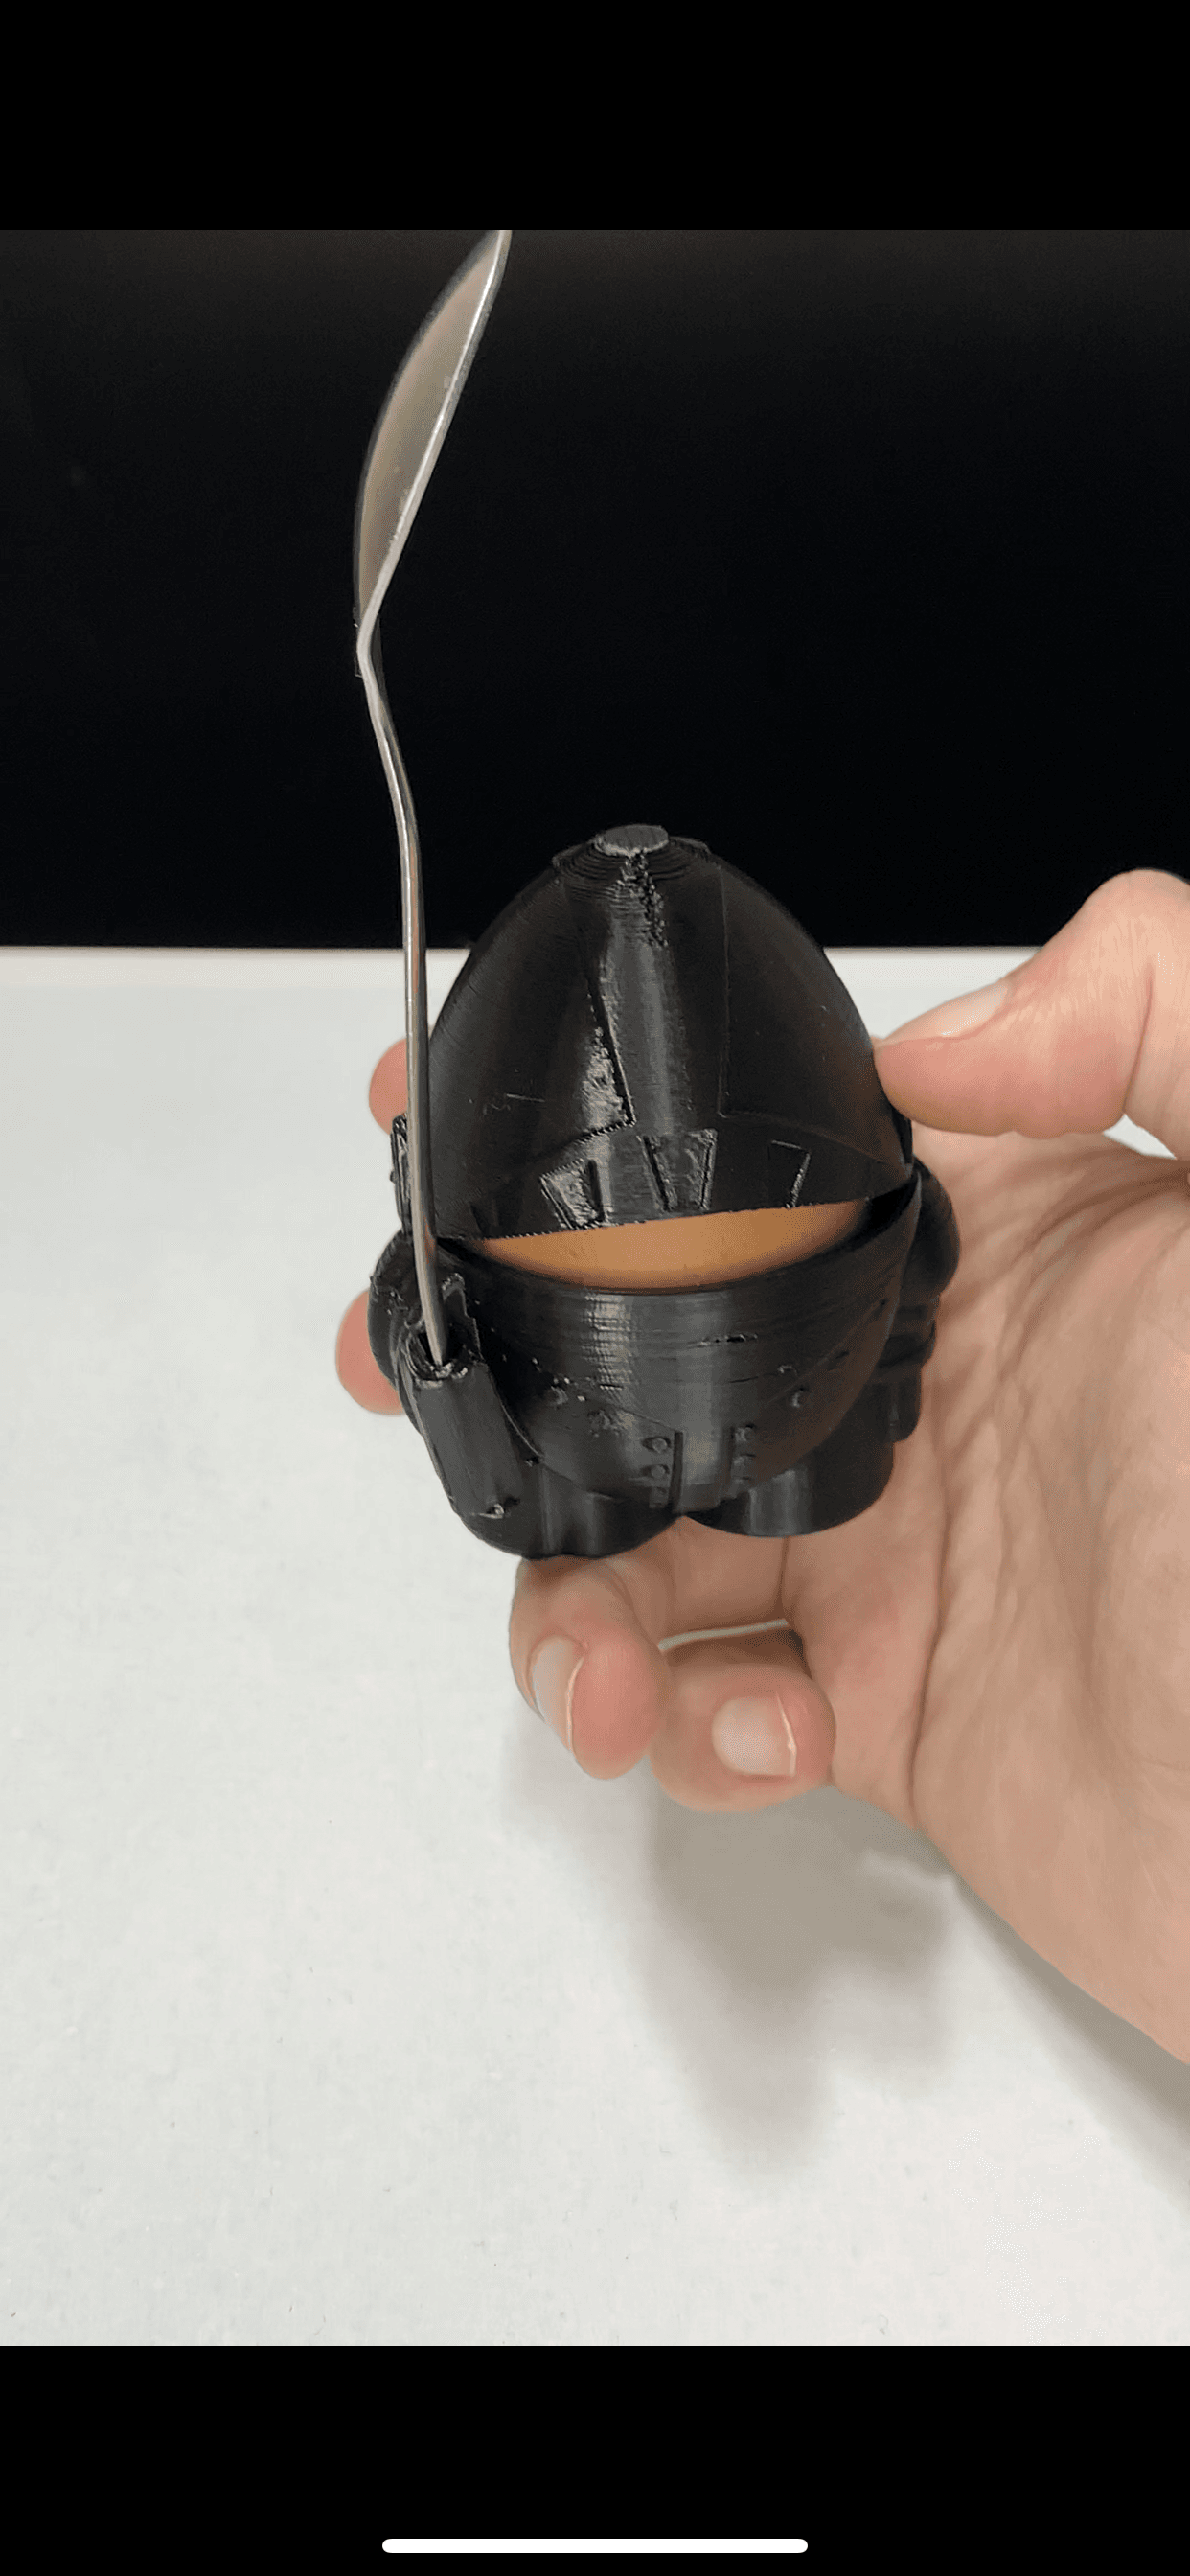 knight egg holder 3d model